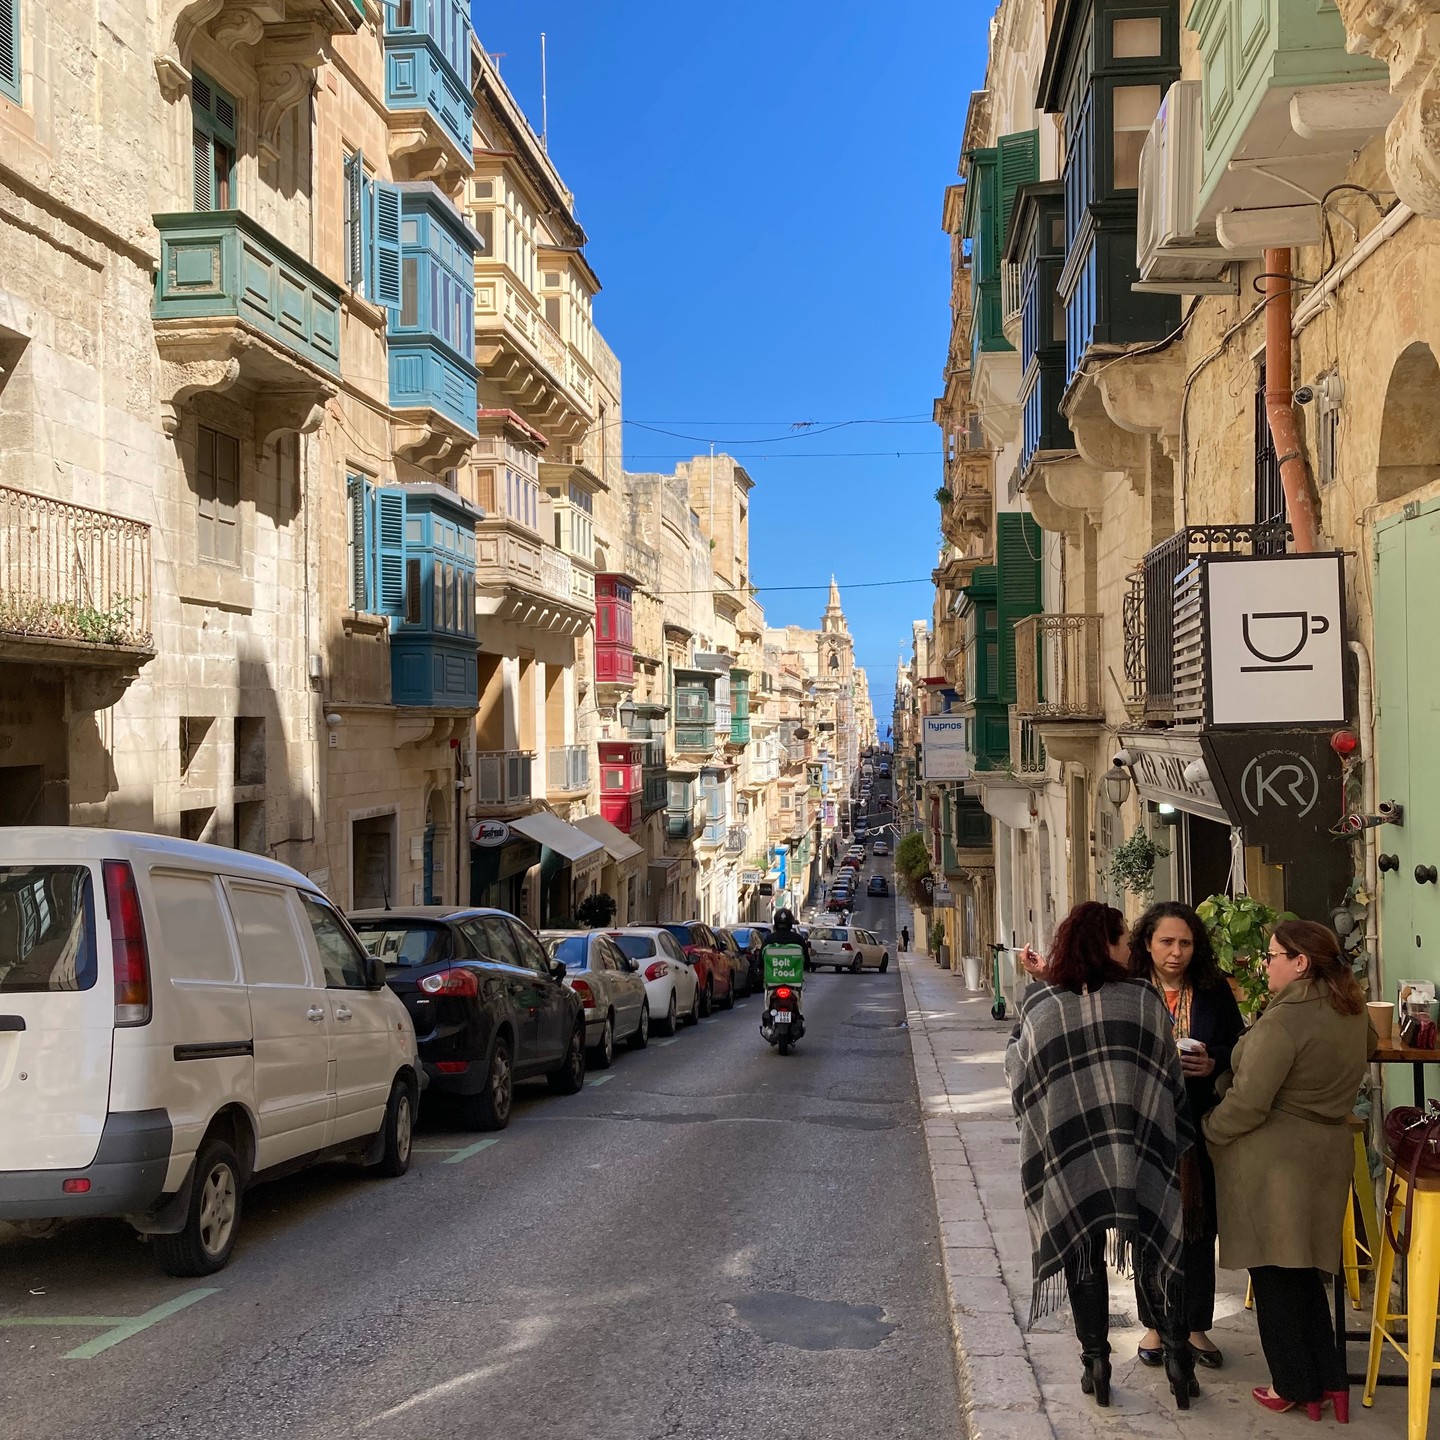 Ein paar Impressionen aus Malta. #Malta #Valletta #Reisen #Travel #Unterwegs #Strasse #Meer #Balkons #Gasse